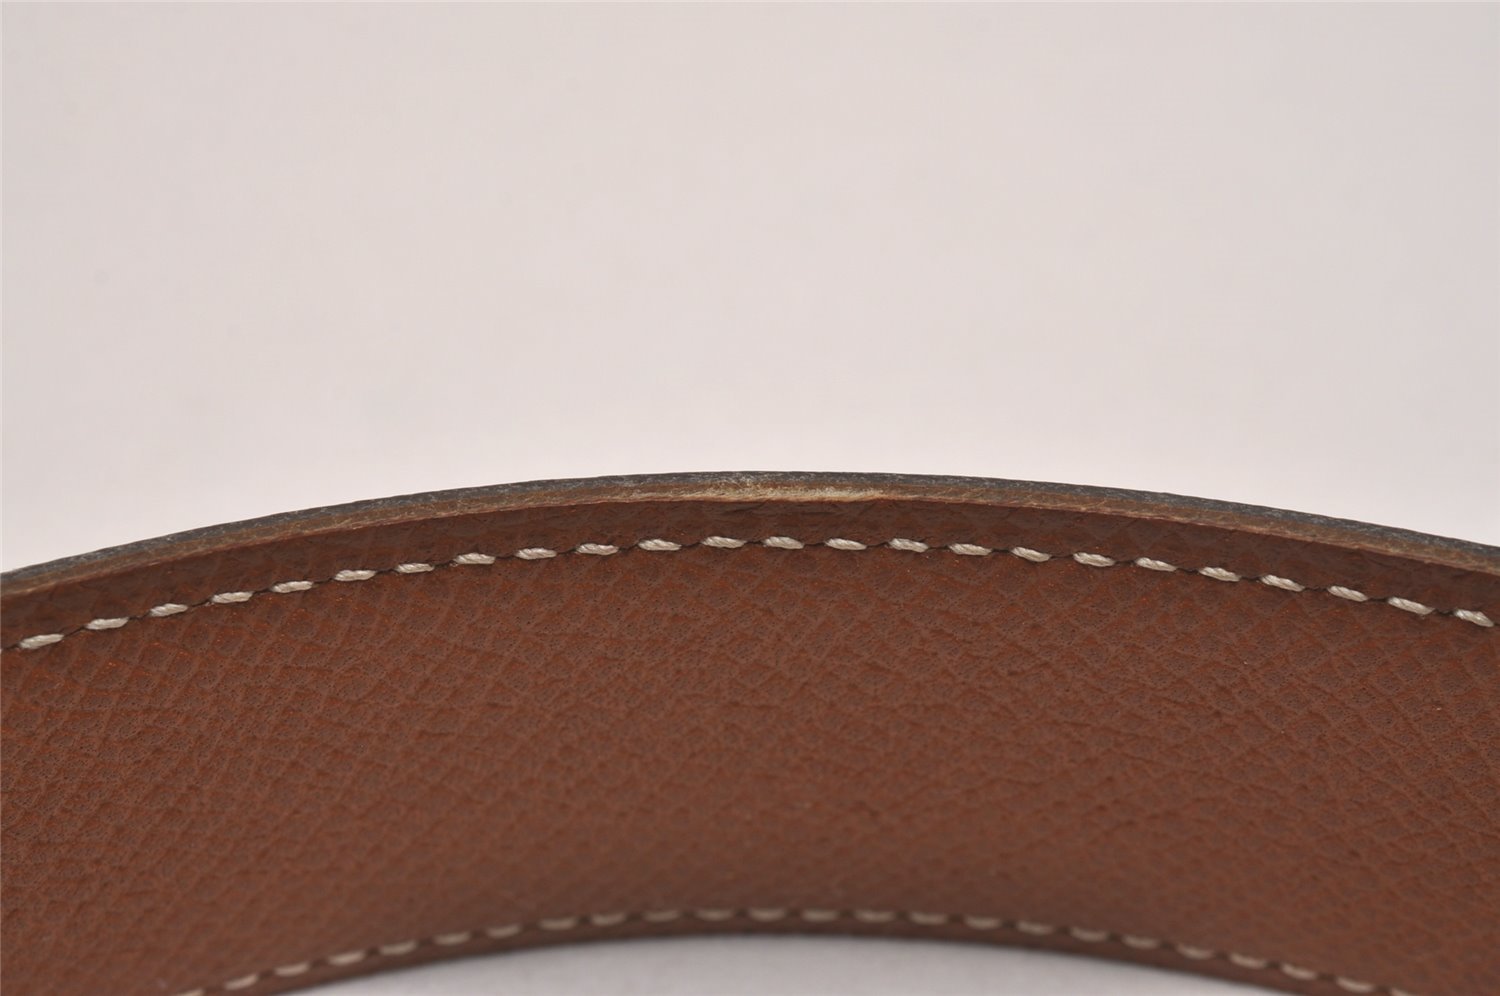 Authentic HERMES Constance Leather Belt Size 65cm 25.6